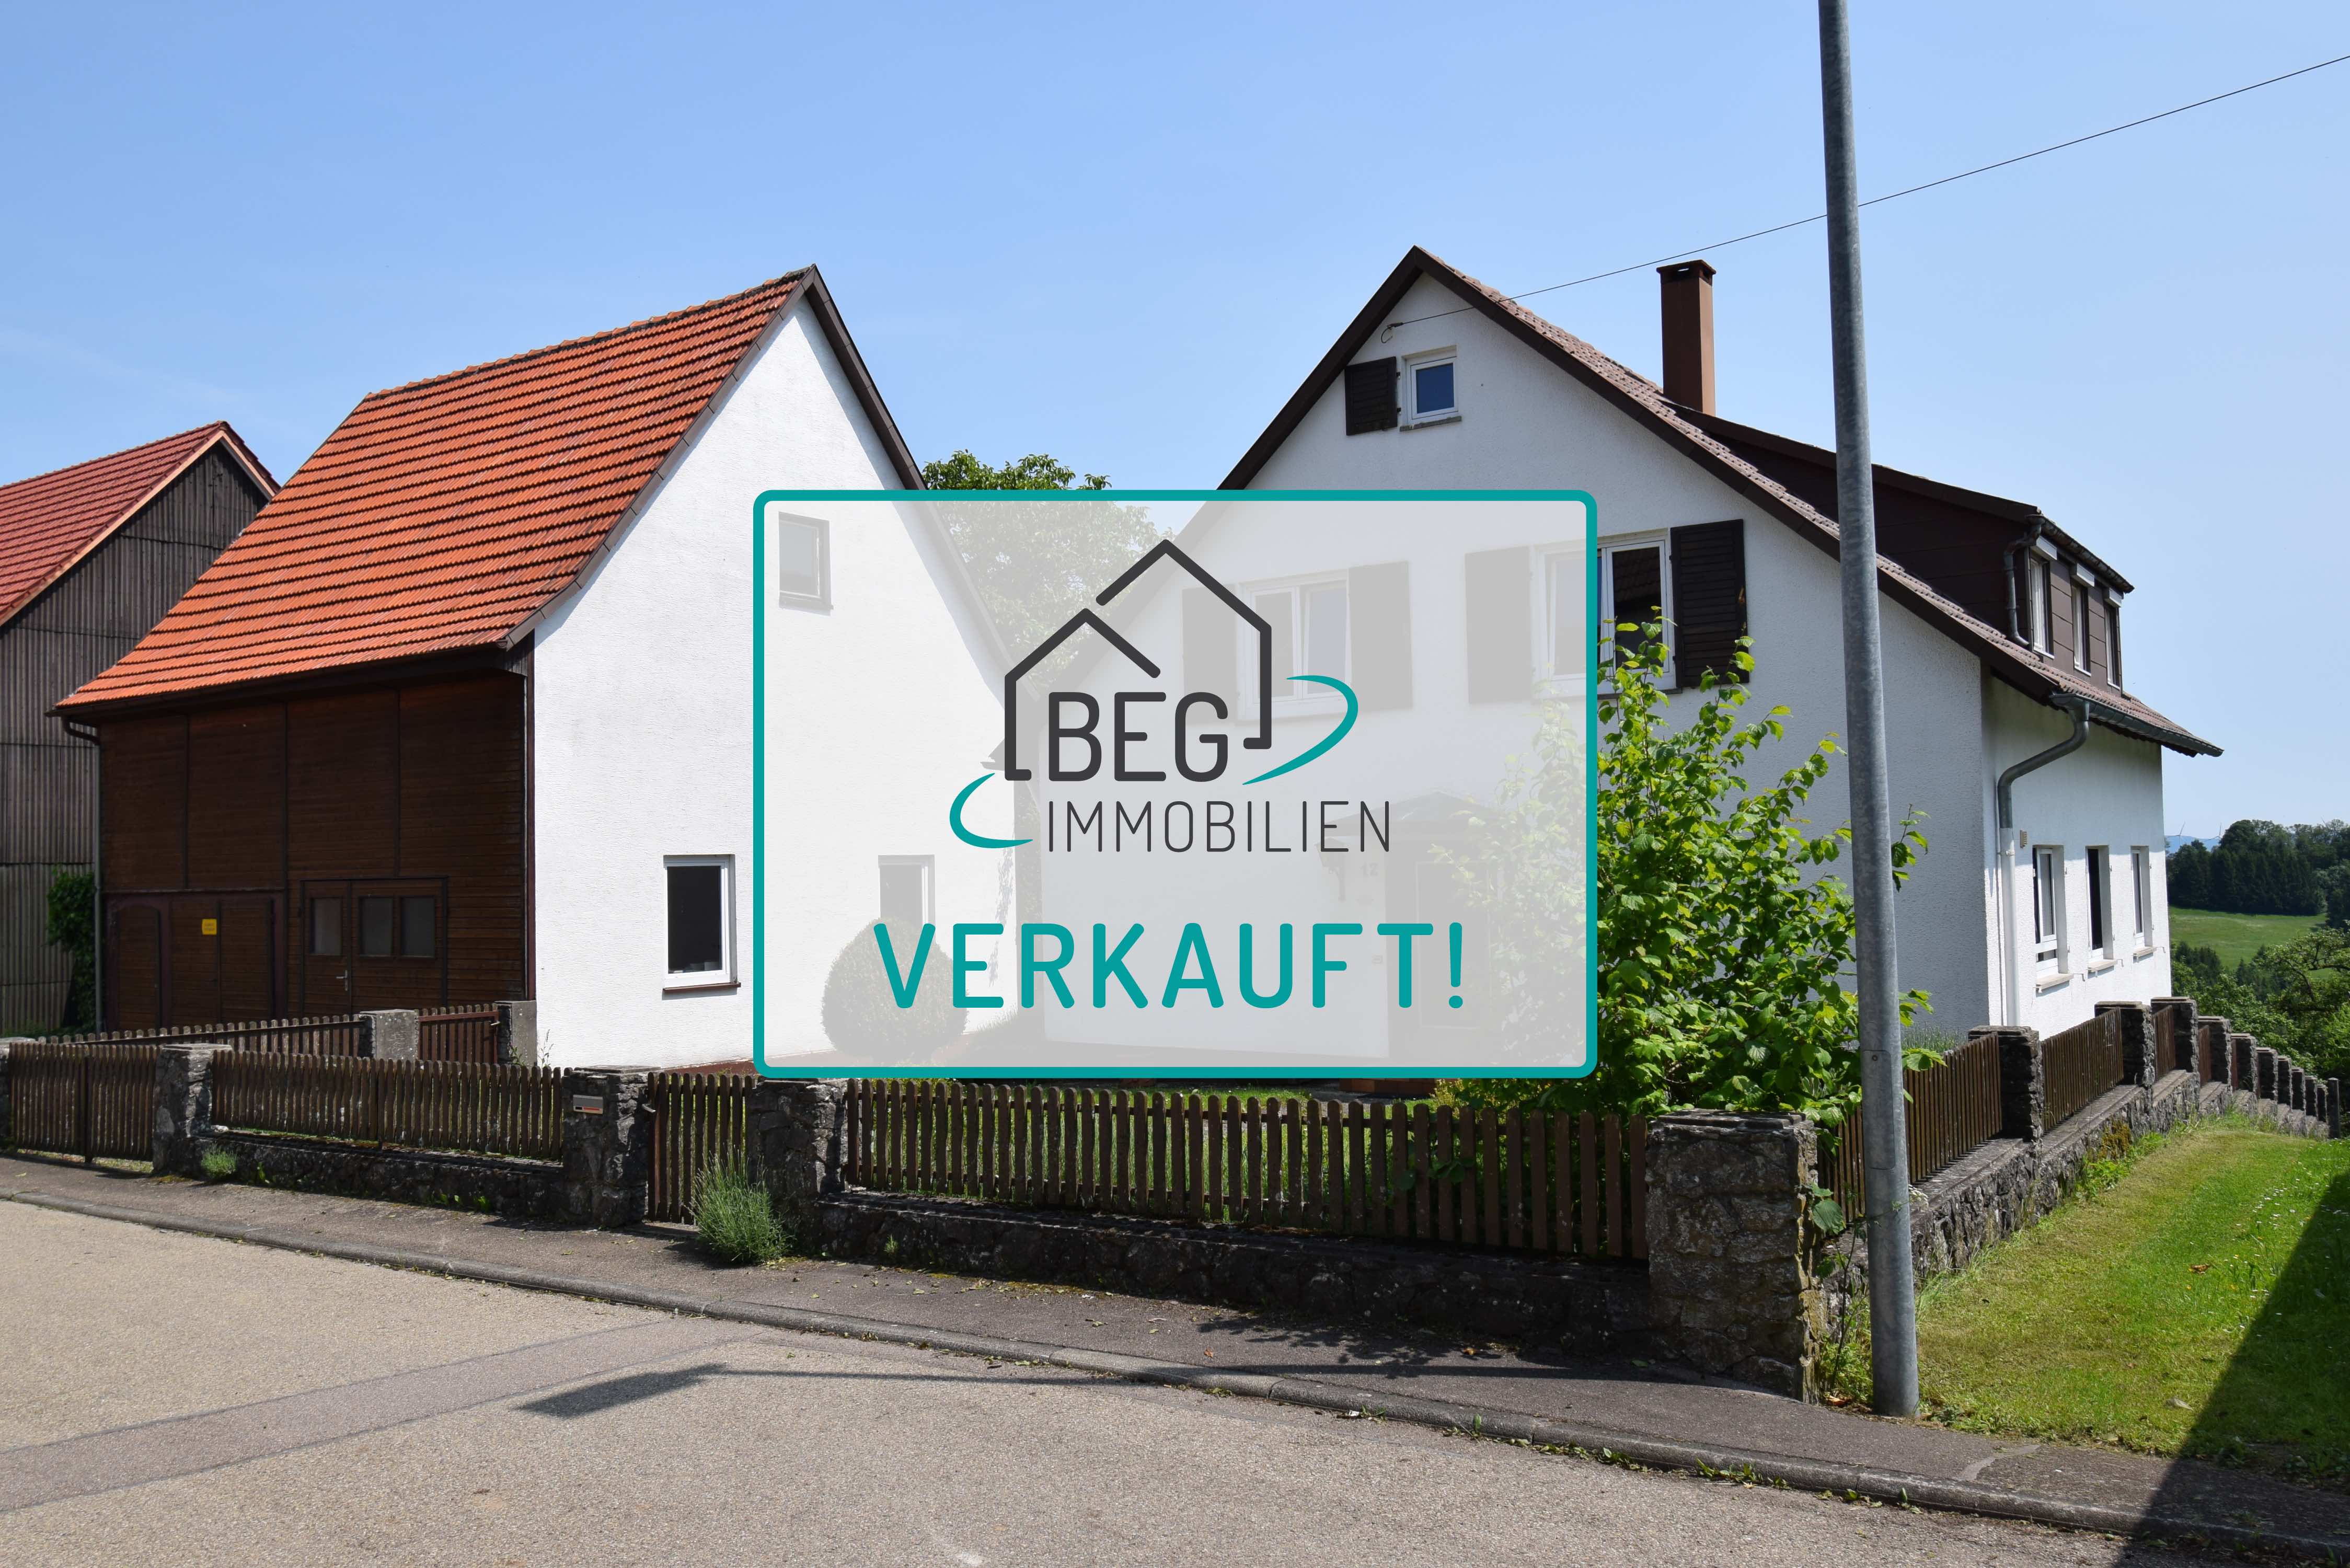 Verkauft: Einfamilienhaus mit Scheune auf großem Grundstück sucht neuen Eigentümer